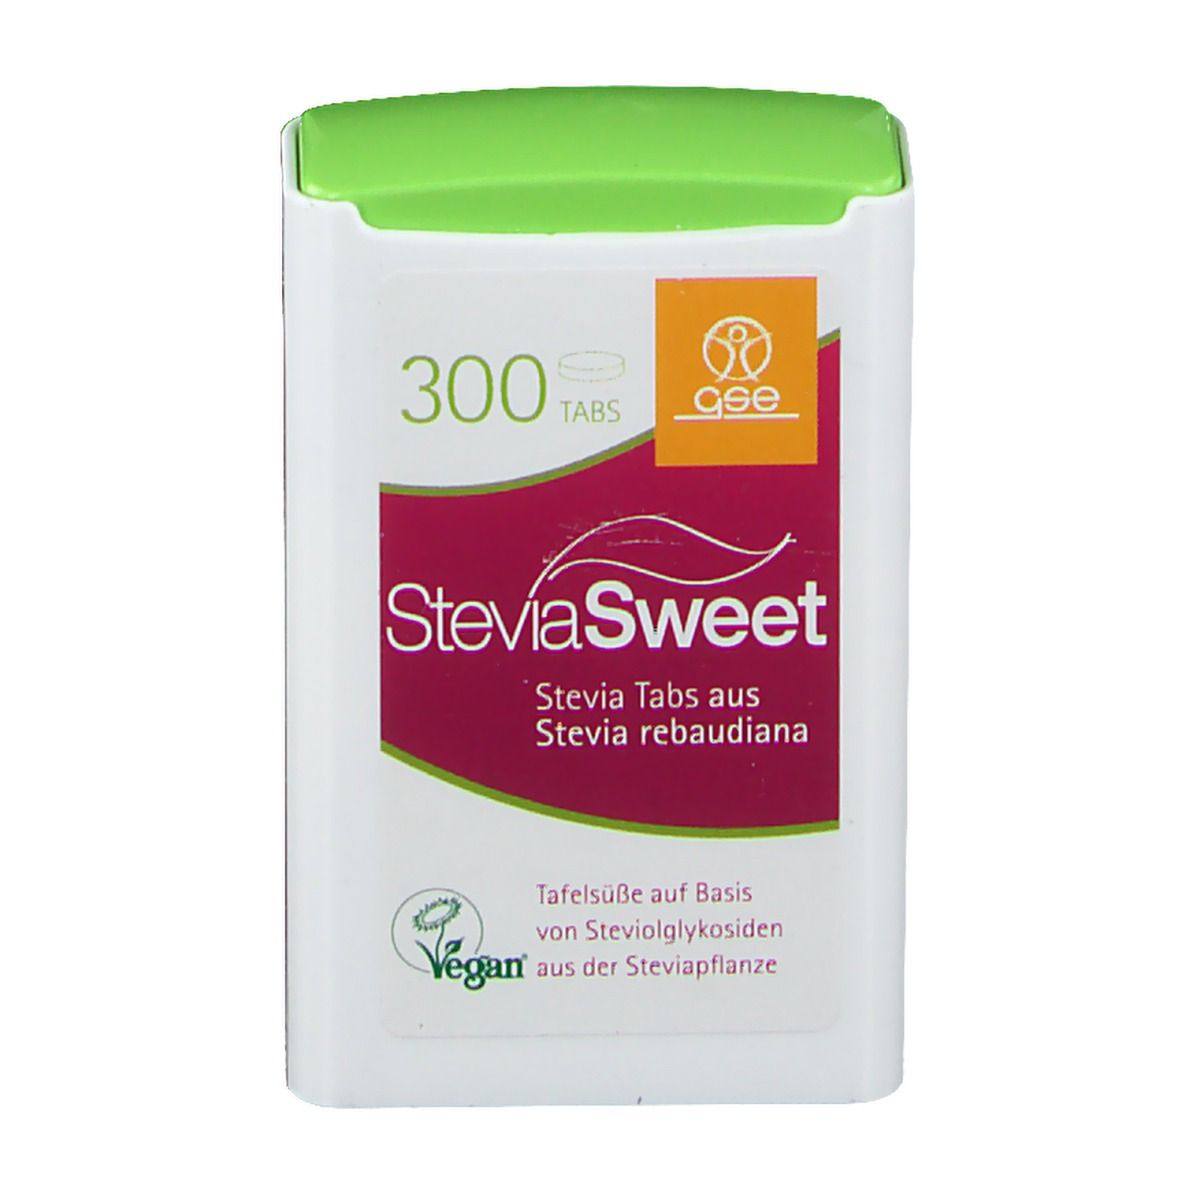 SteviaSweet Tabs